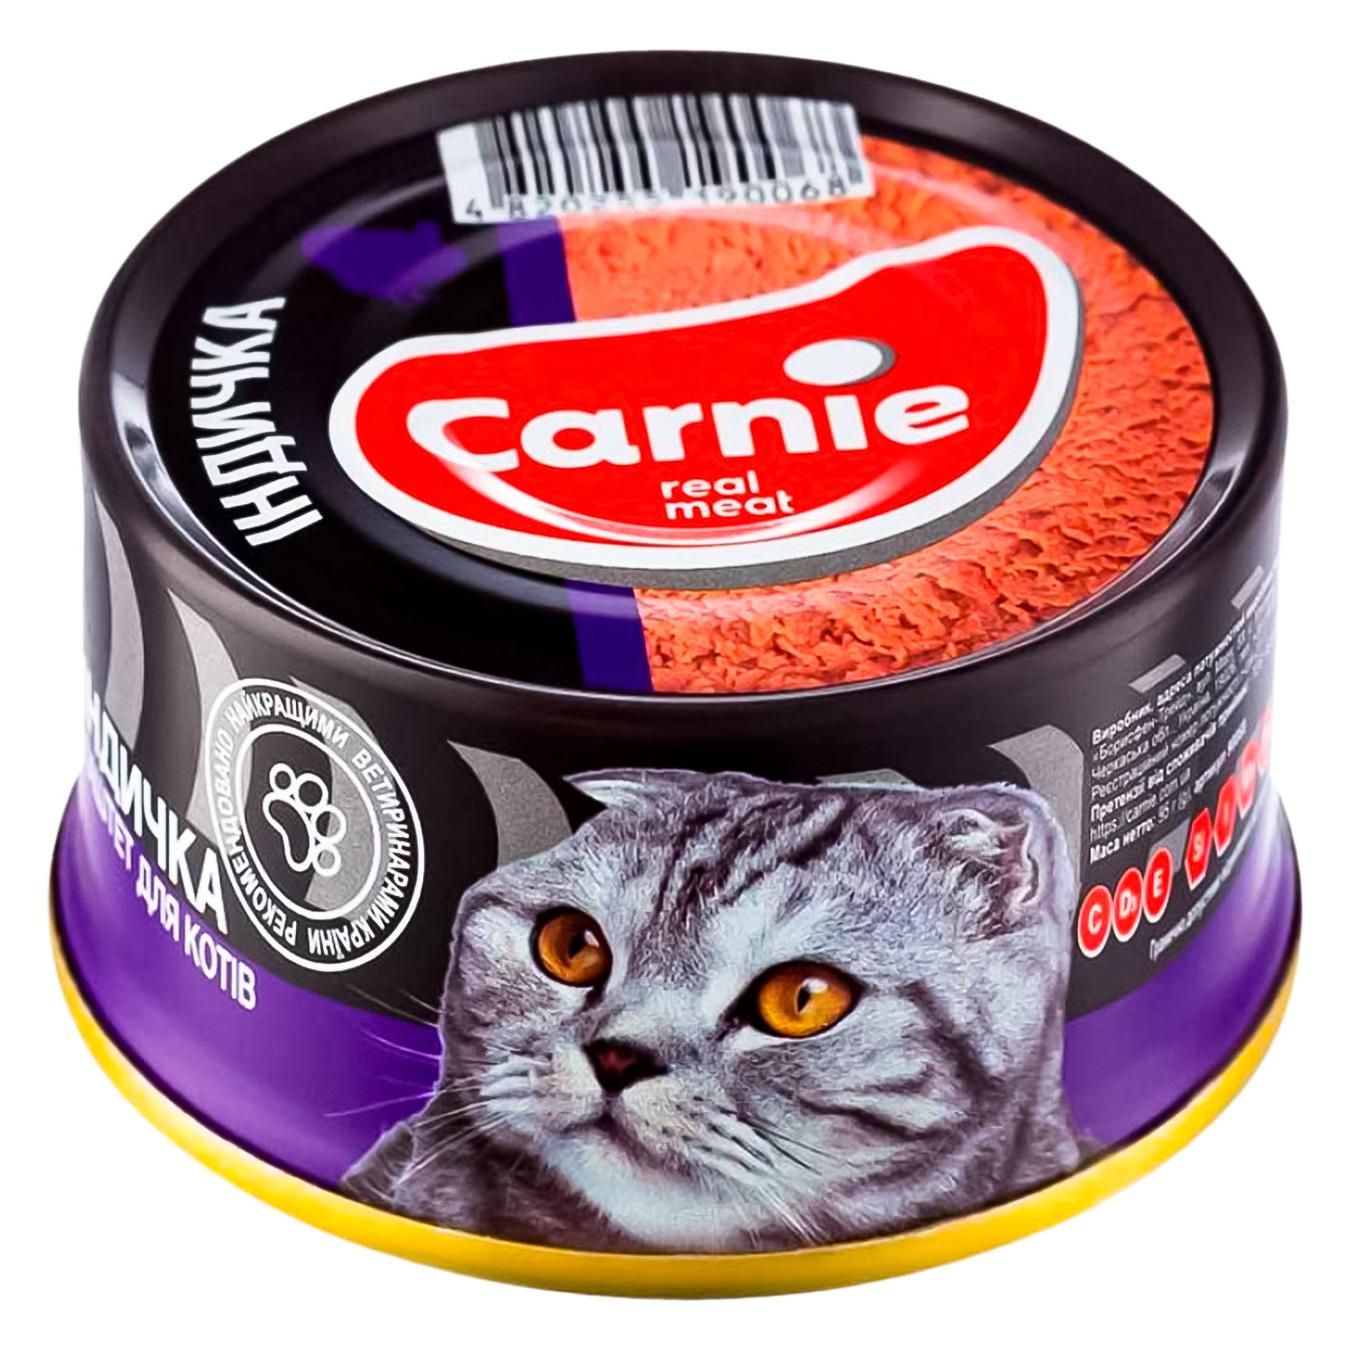 Корм Carnie для кошек консервный паштет мясной с индейкой 100г